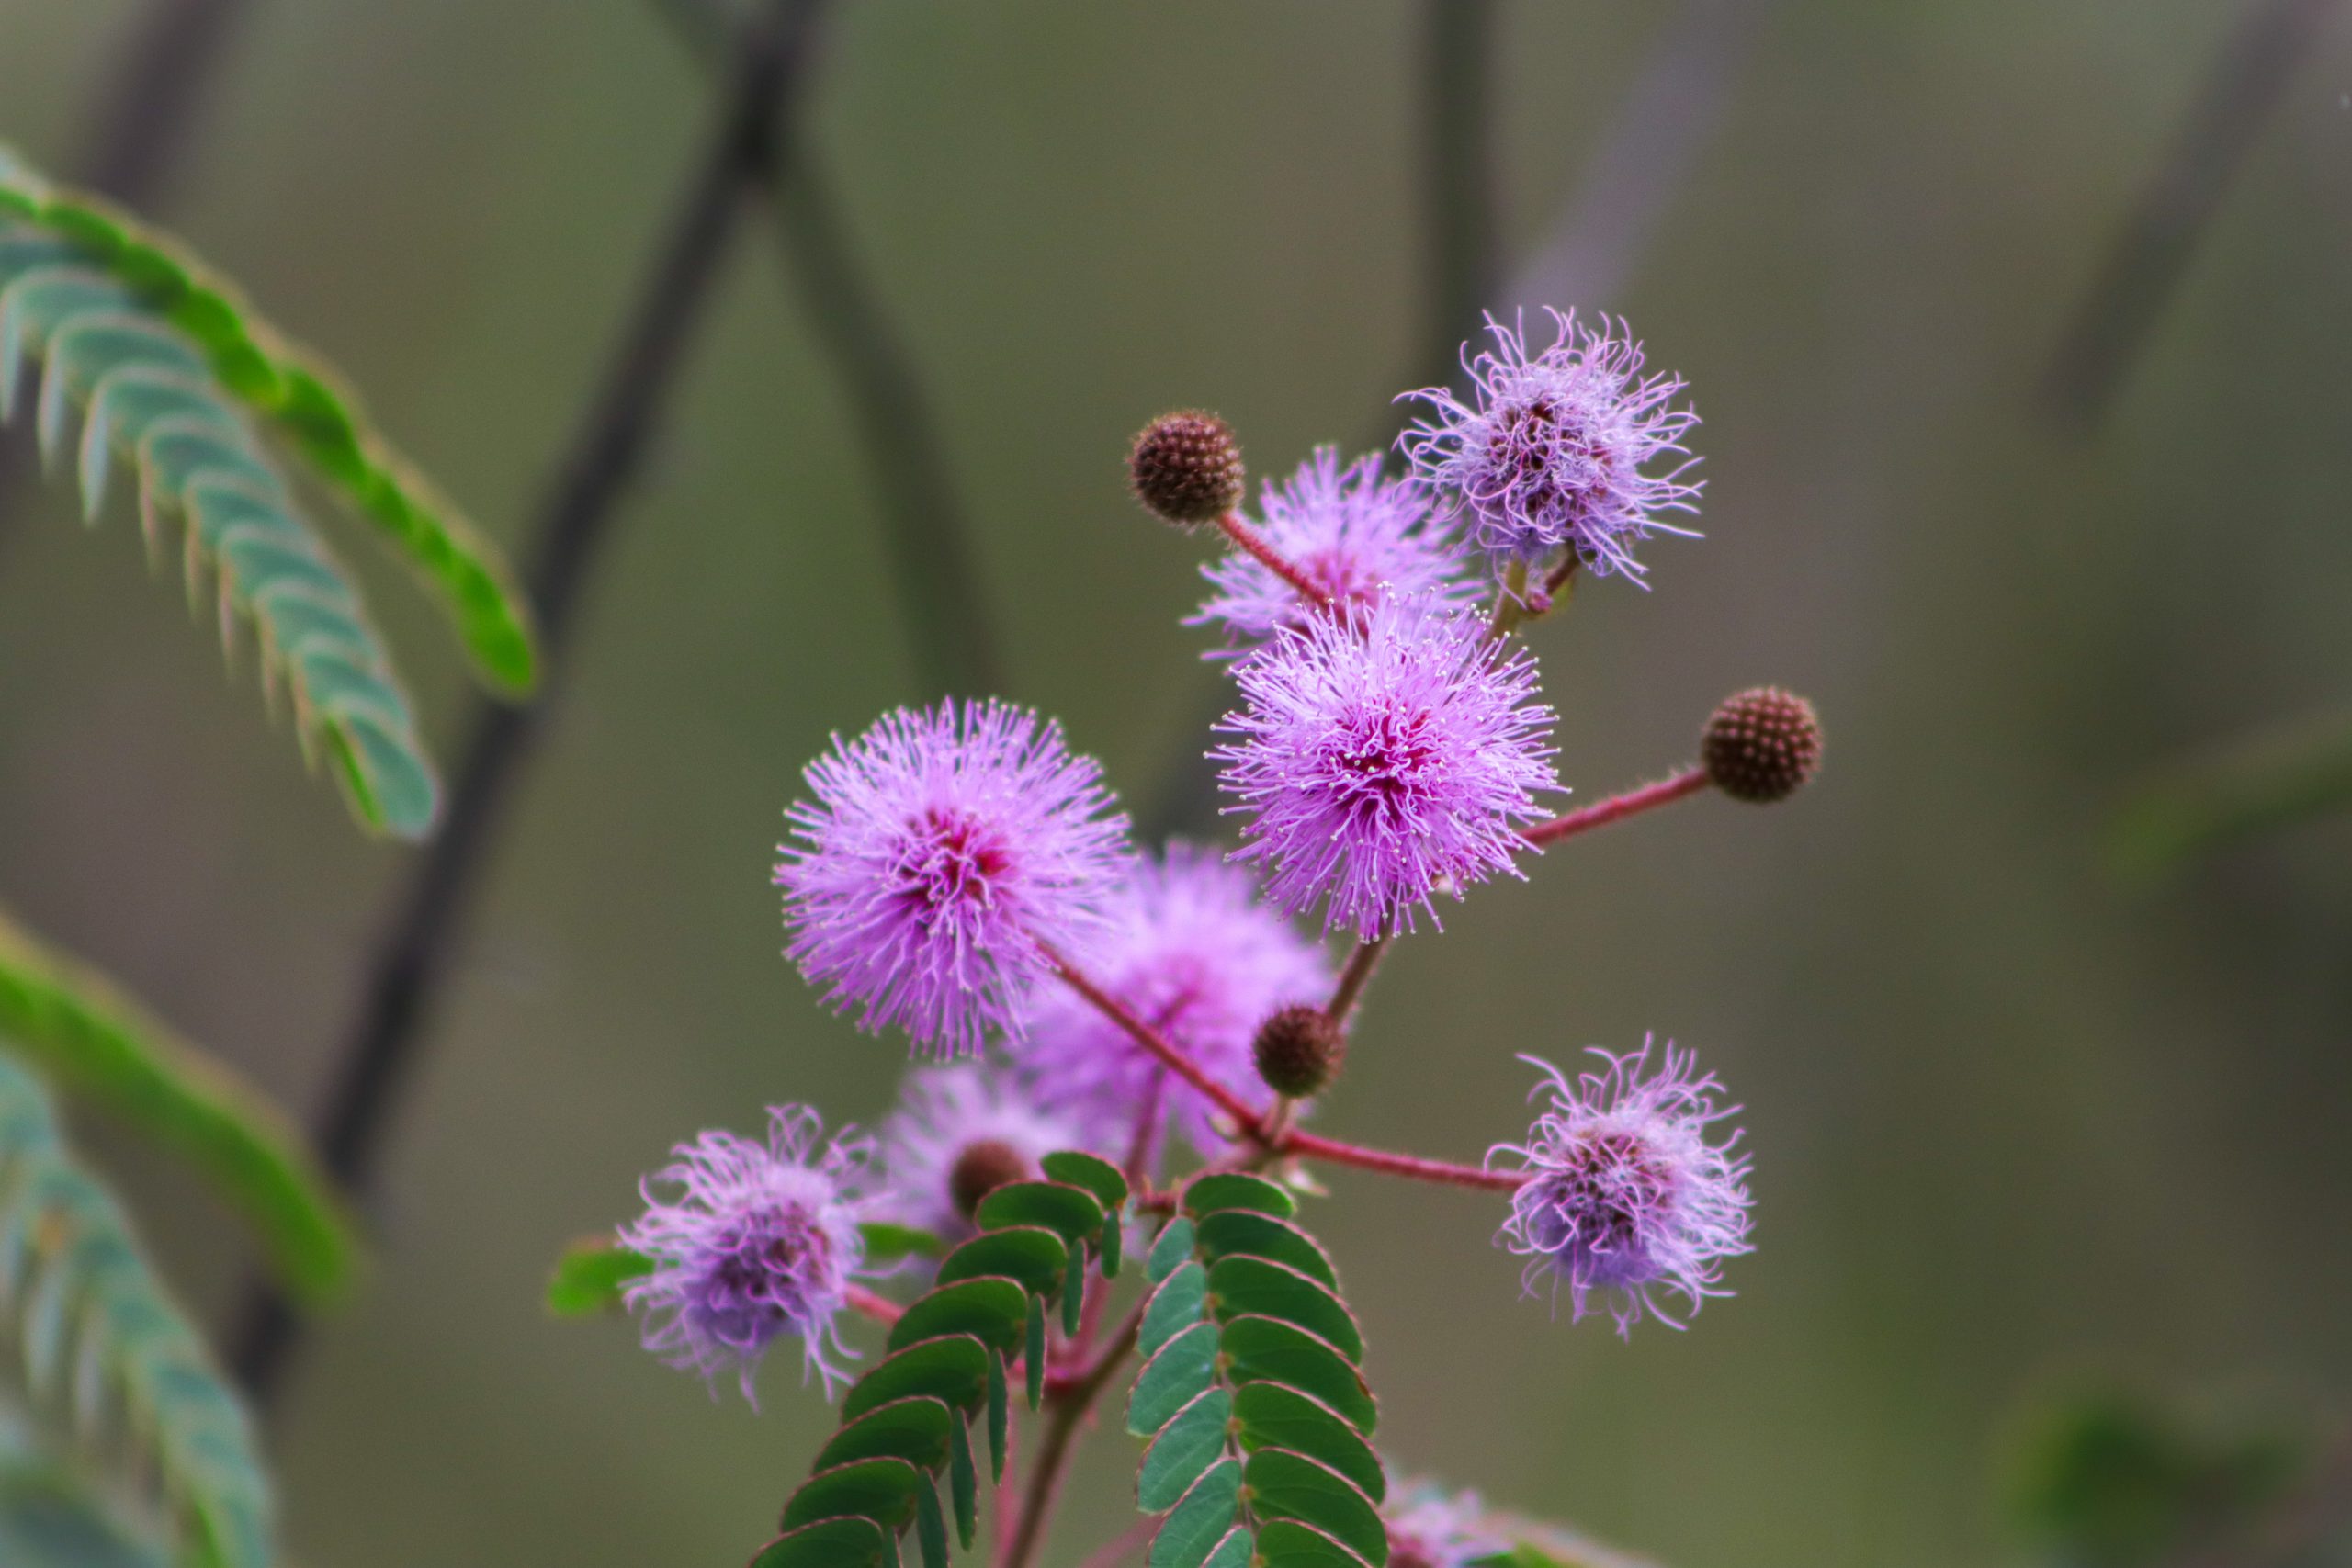 Na imagem há uma planta da espécie mimosa pudica, também conhecida como dormideira. Ela tem folhas verdes e flores em forma de pompom cor de rosa.